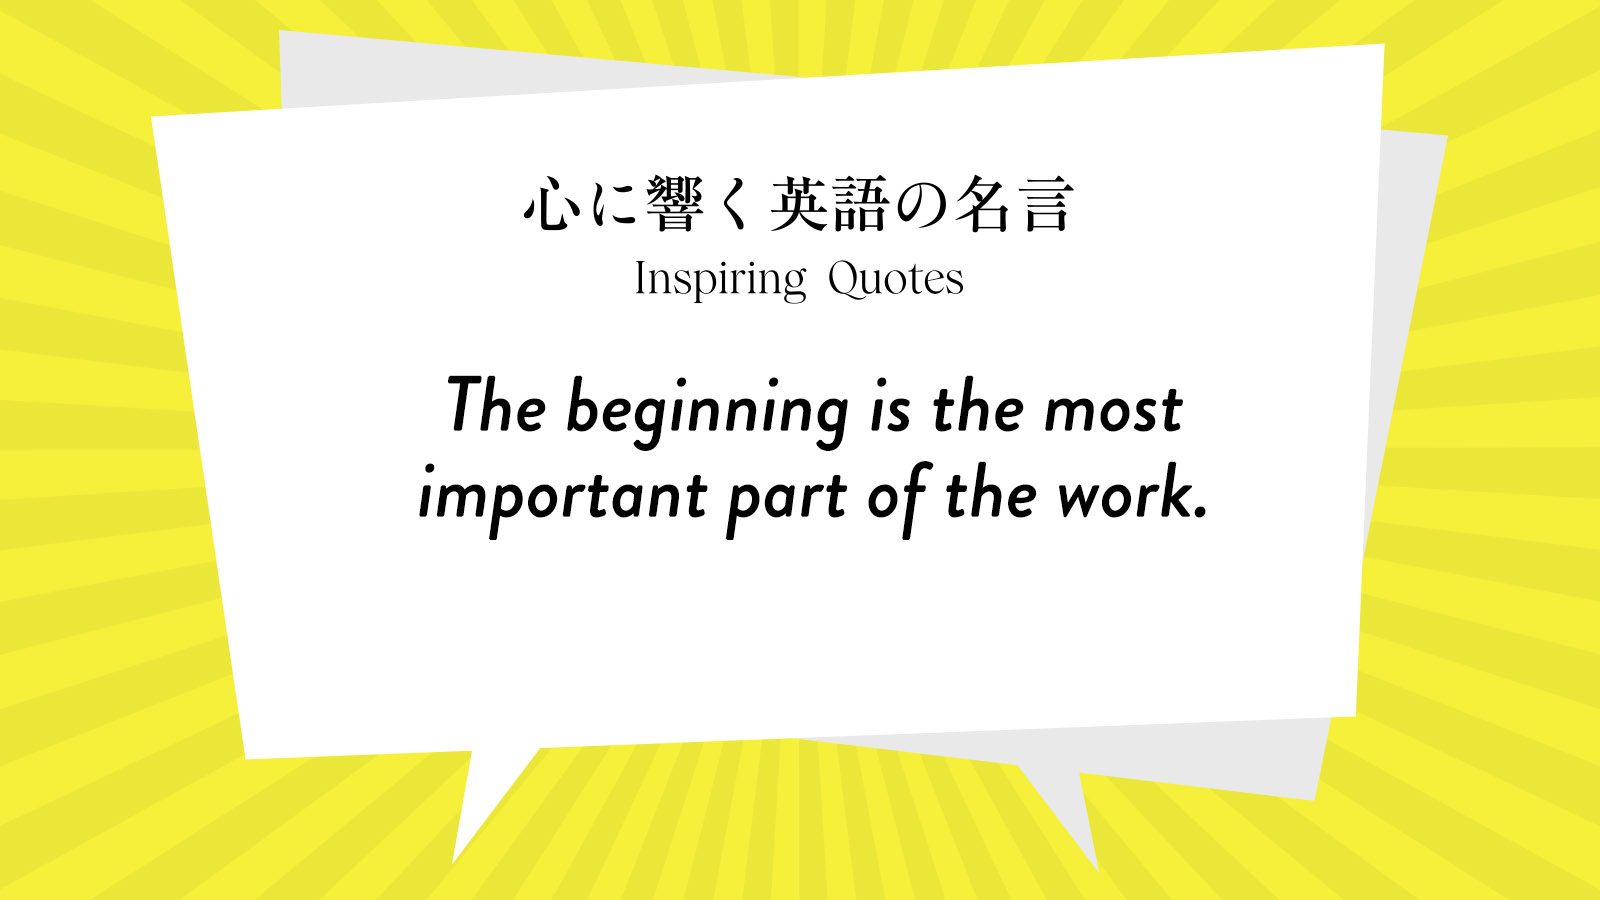 今週の名言 “The beginning is the most important part of the work.” | Inspiring Quotes: 心に響く英語の名言